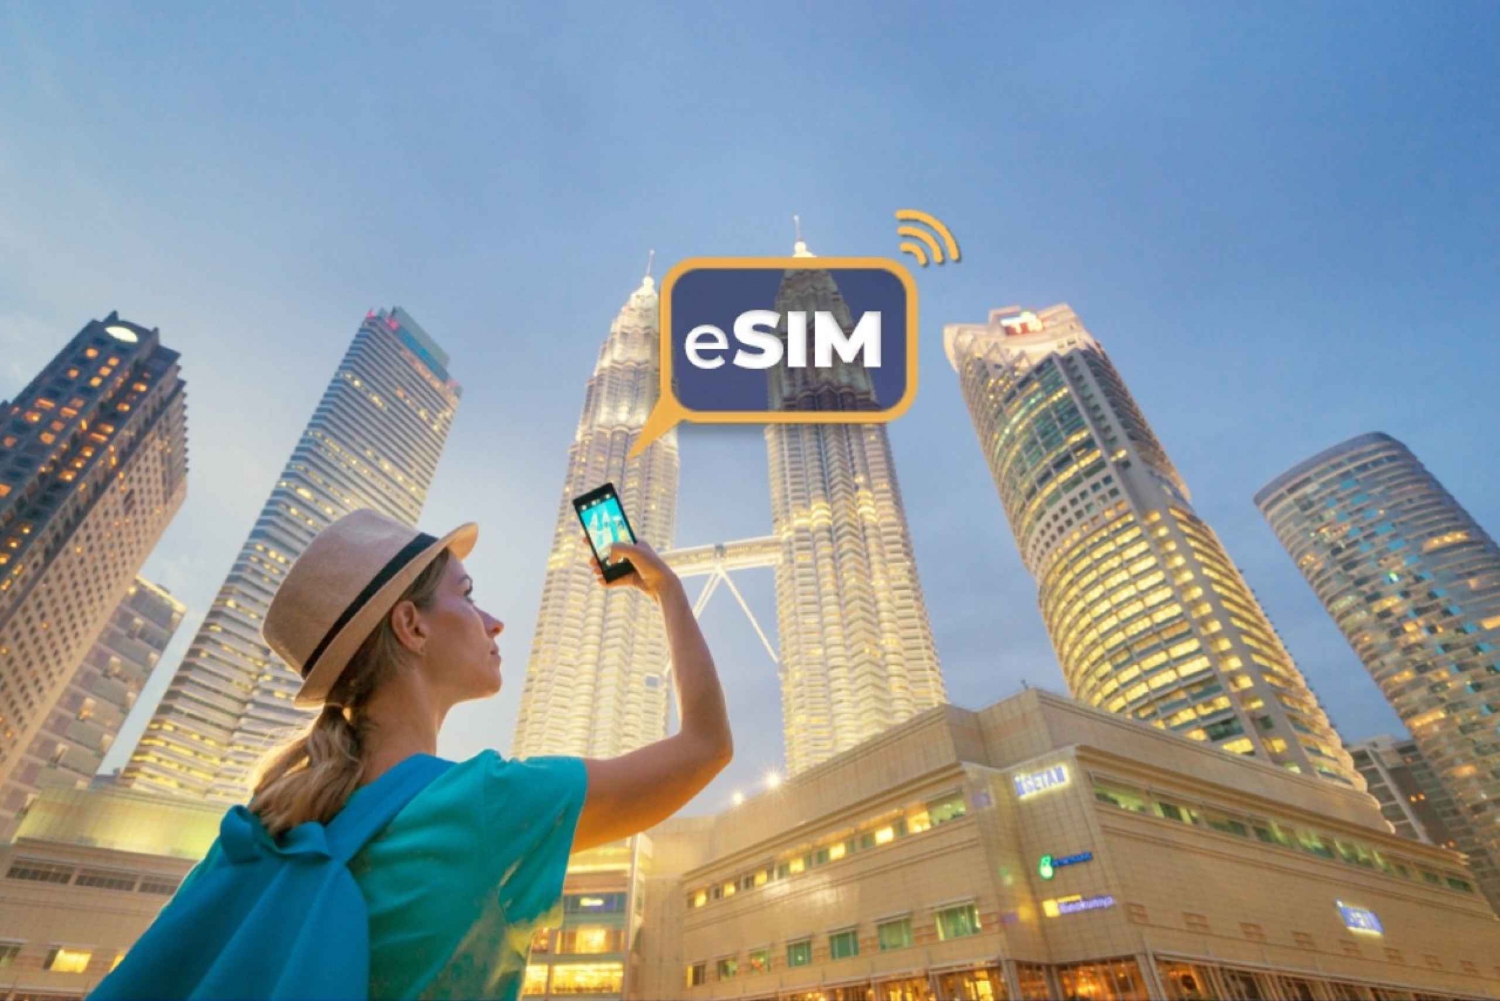 Malesia: dati mobili in roaming con eSIM scaricabile